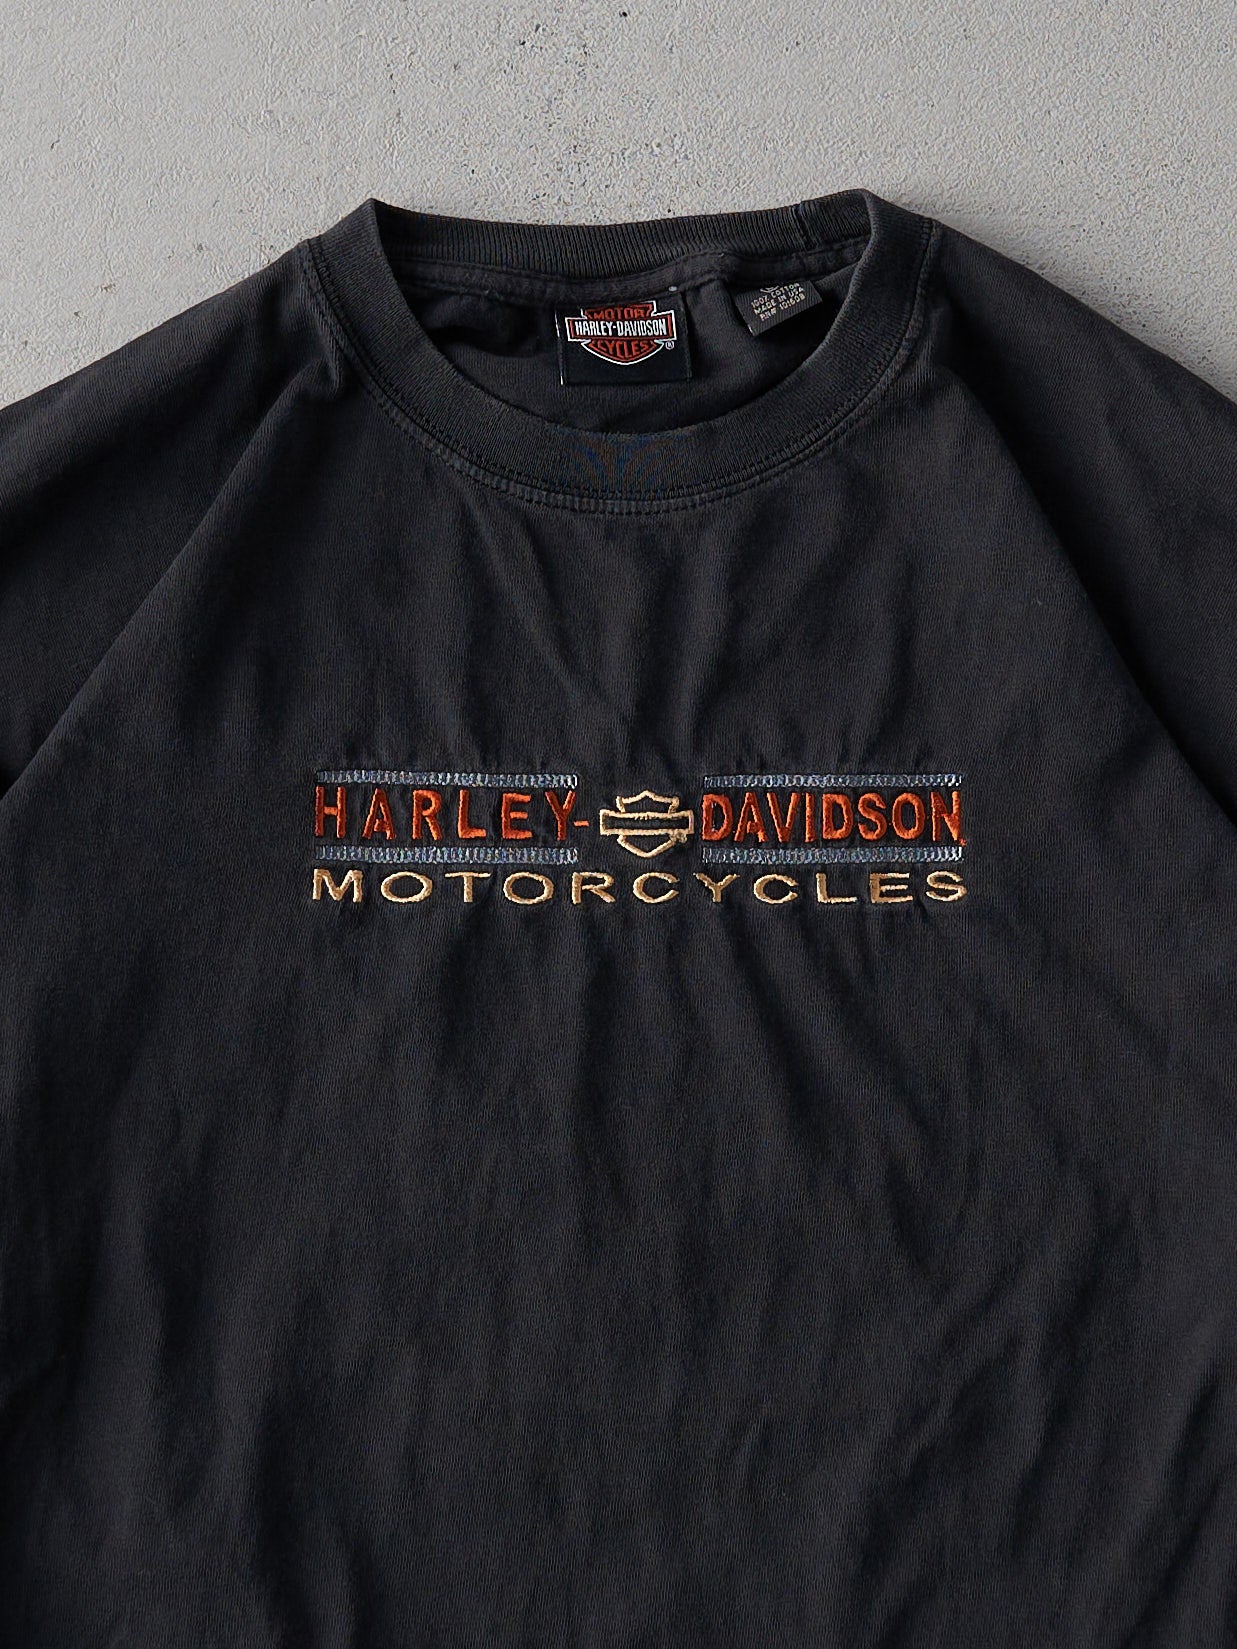 Vintage 90s Black Embroidered Harley Davidson Long Sleeve (M)